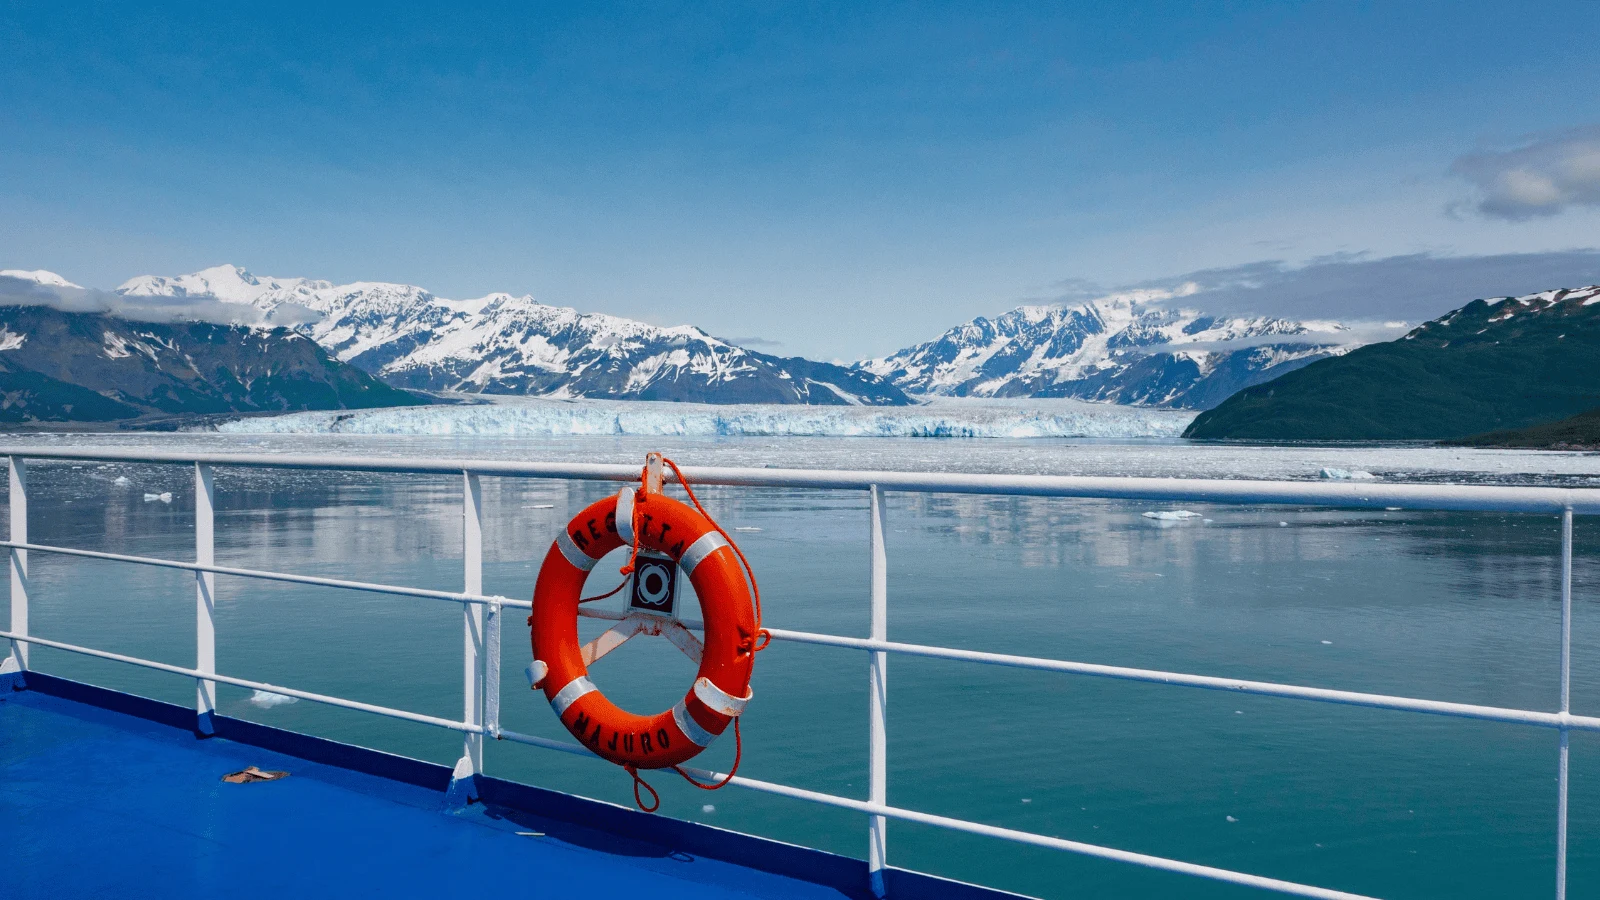 Epic Alaskan cruises